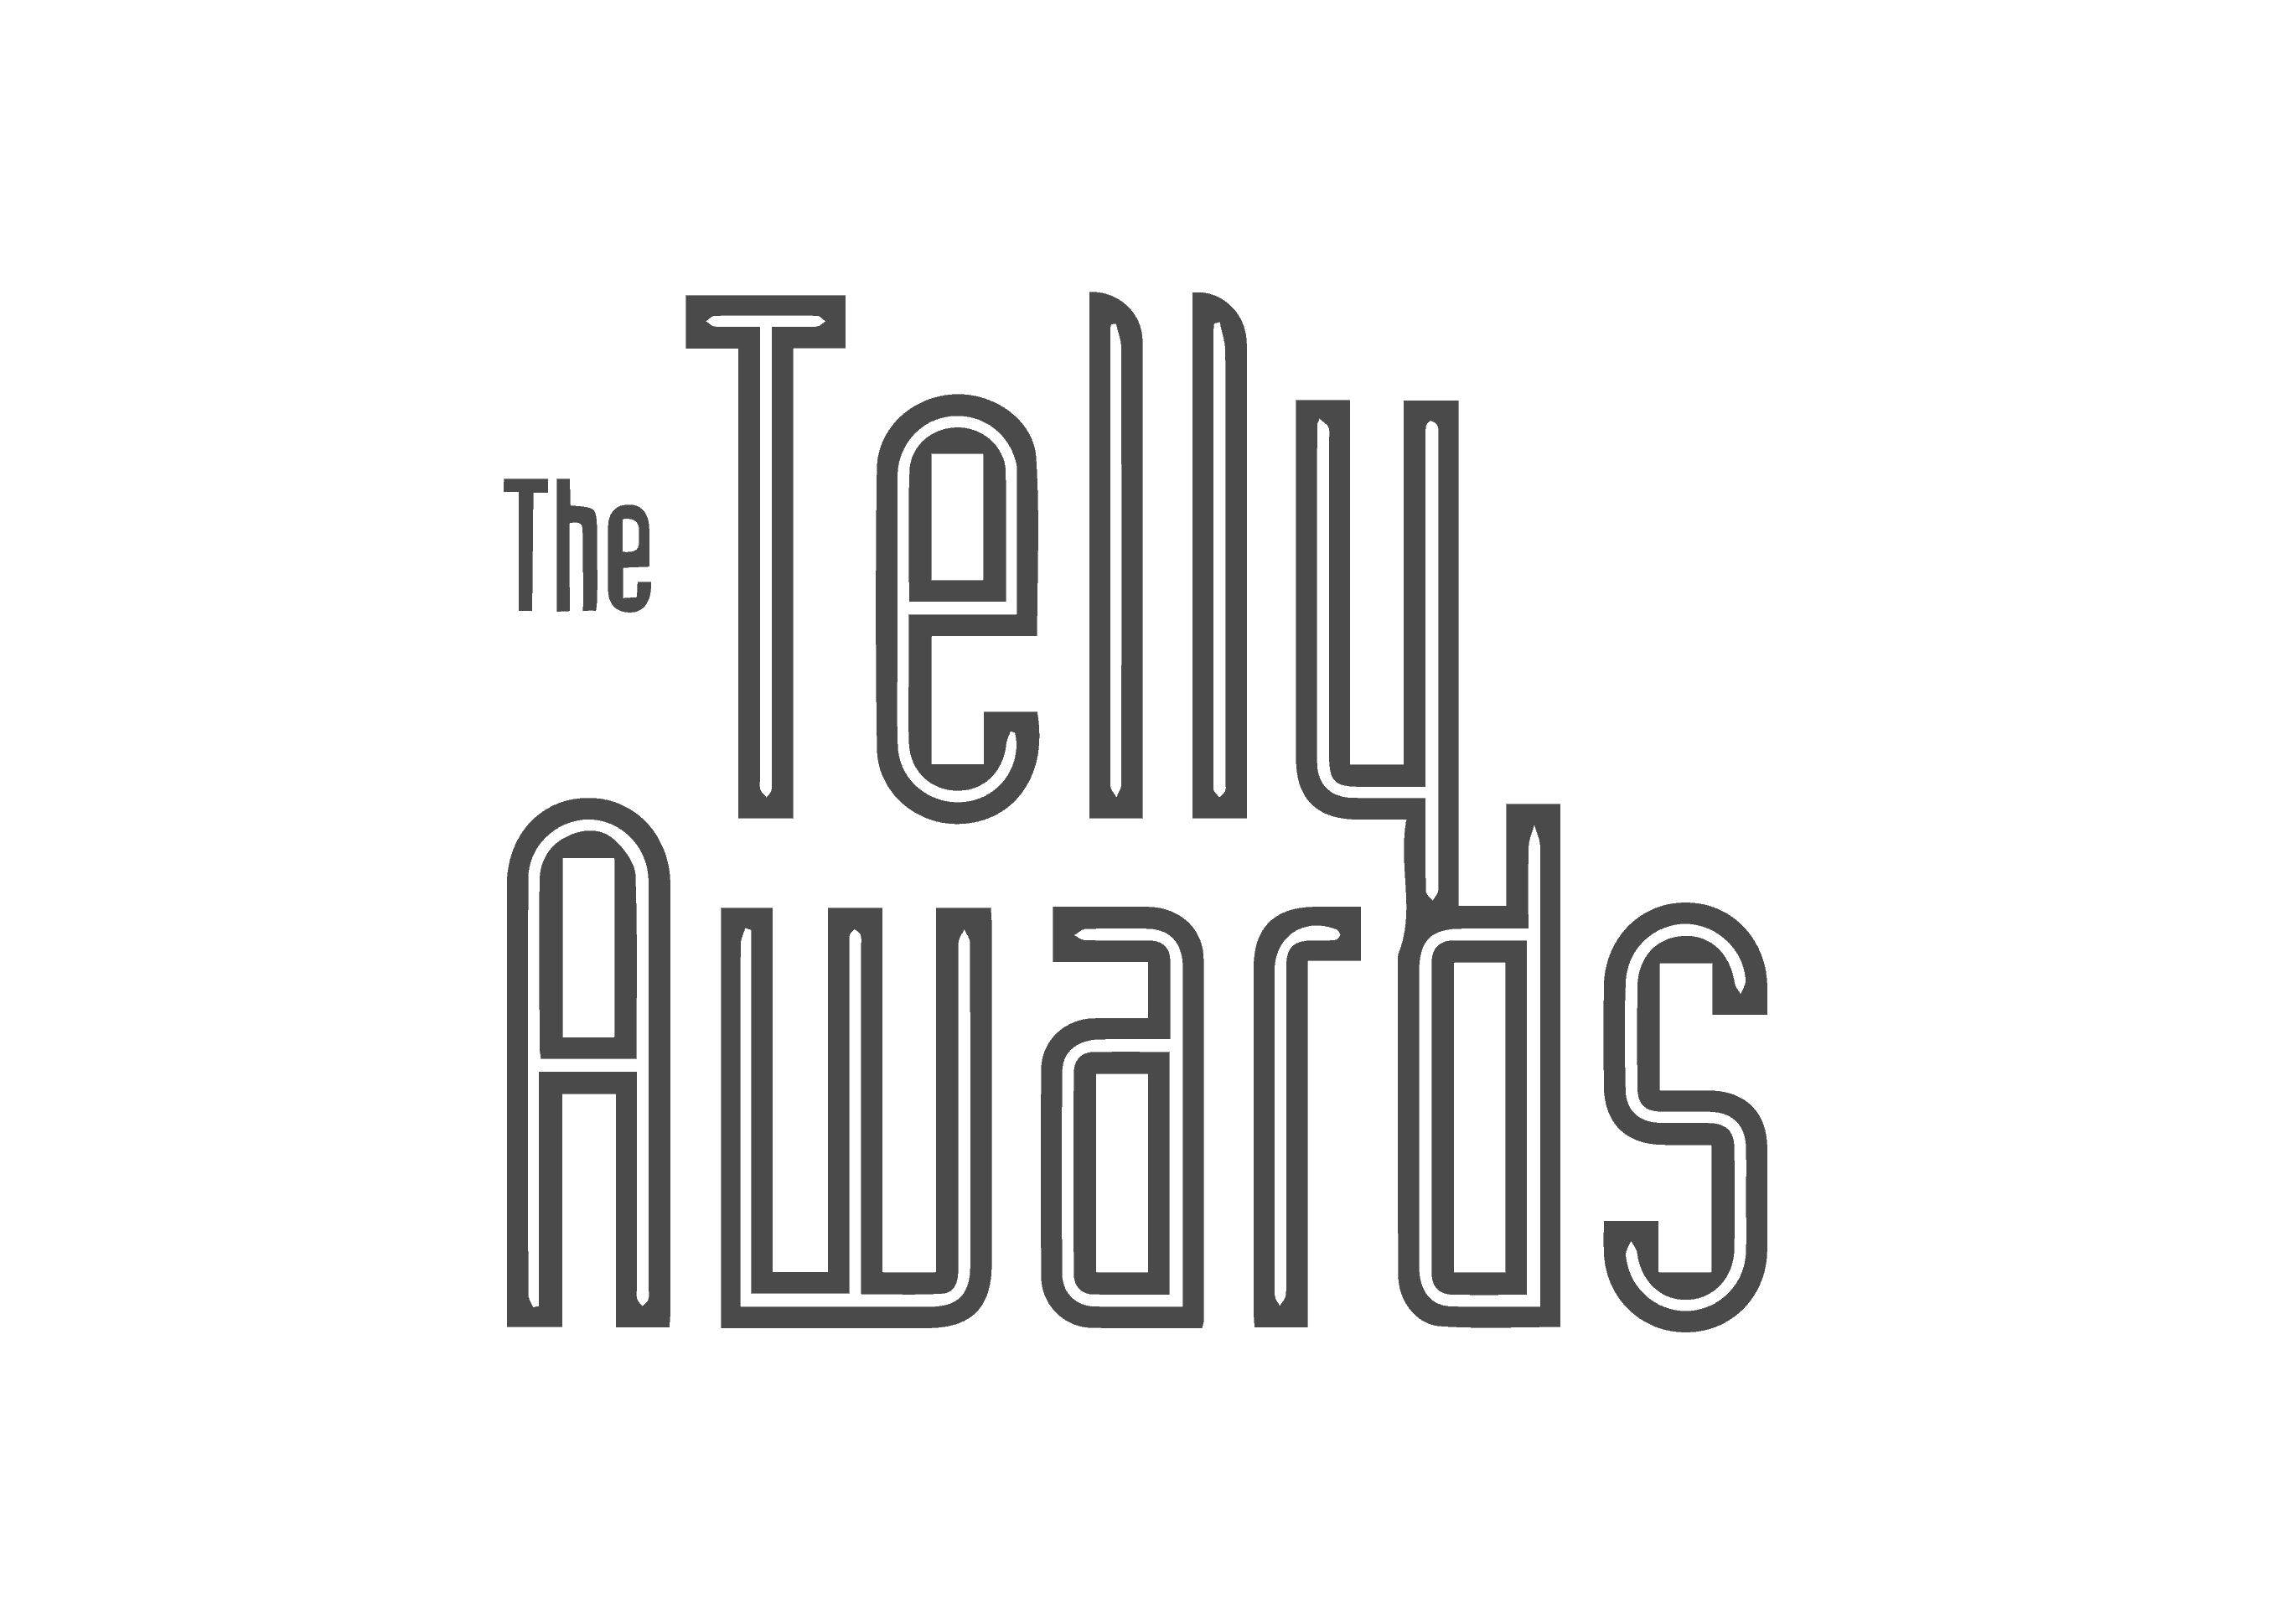 Telly Award